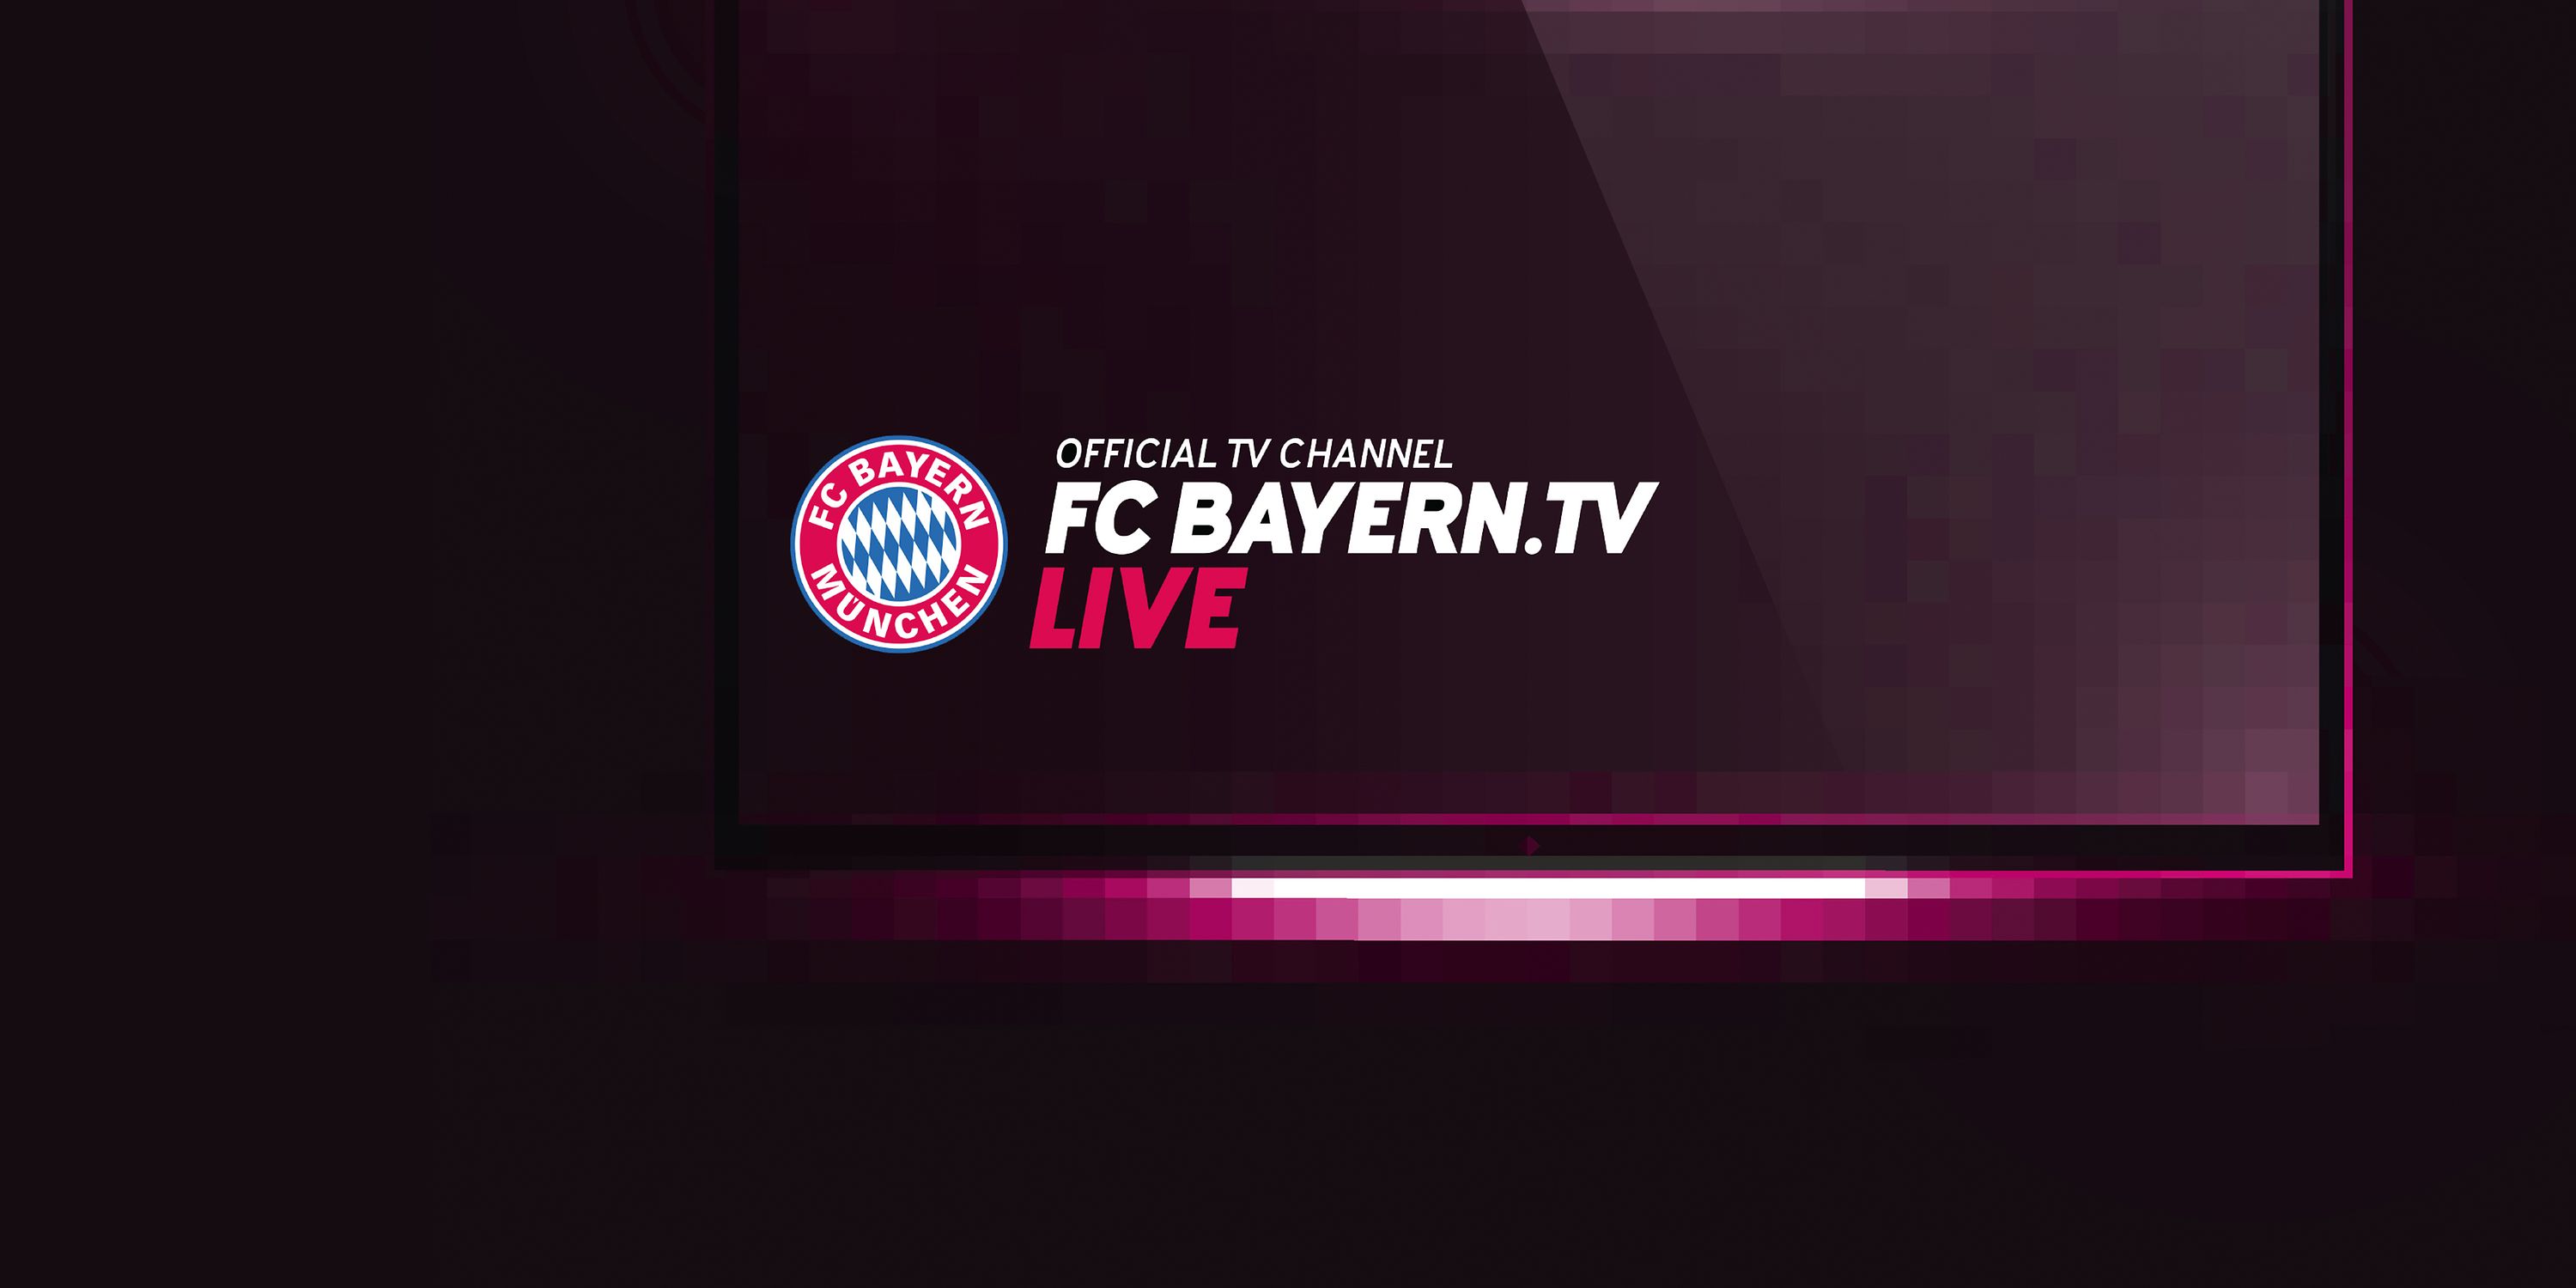 FC Bayern startet eigenen Fernsehsender bei EntertainTV Deutsche Telekom